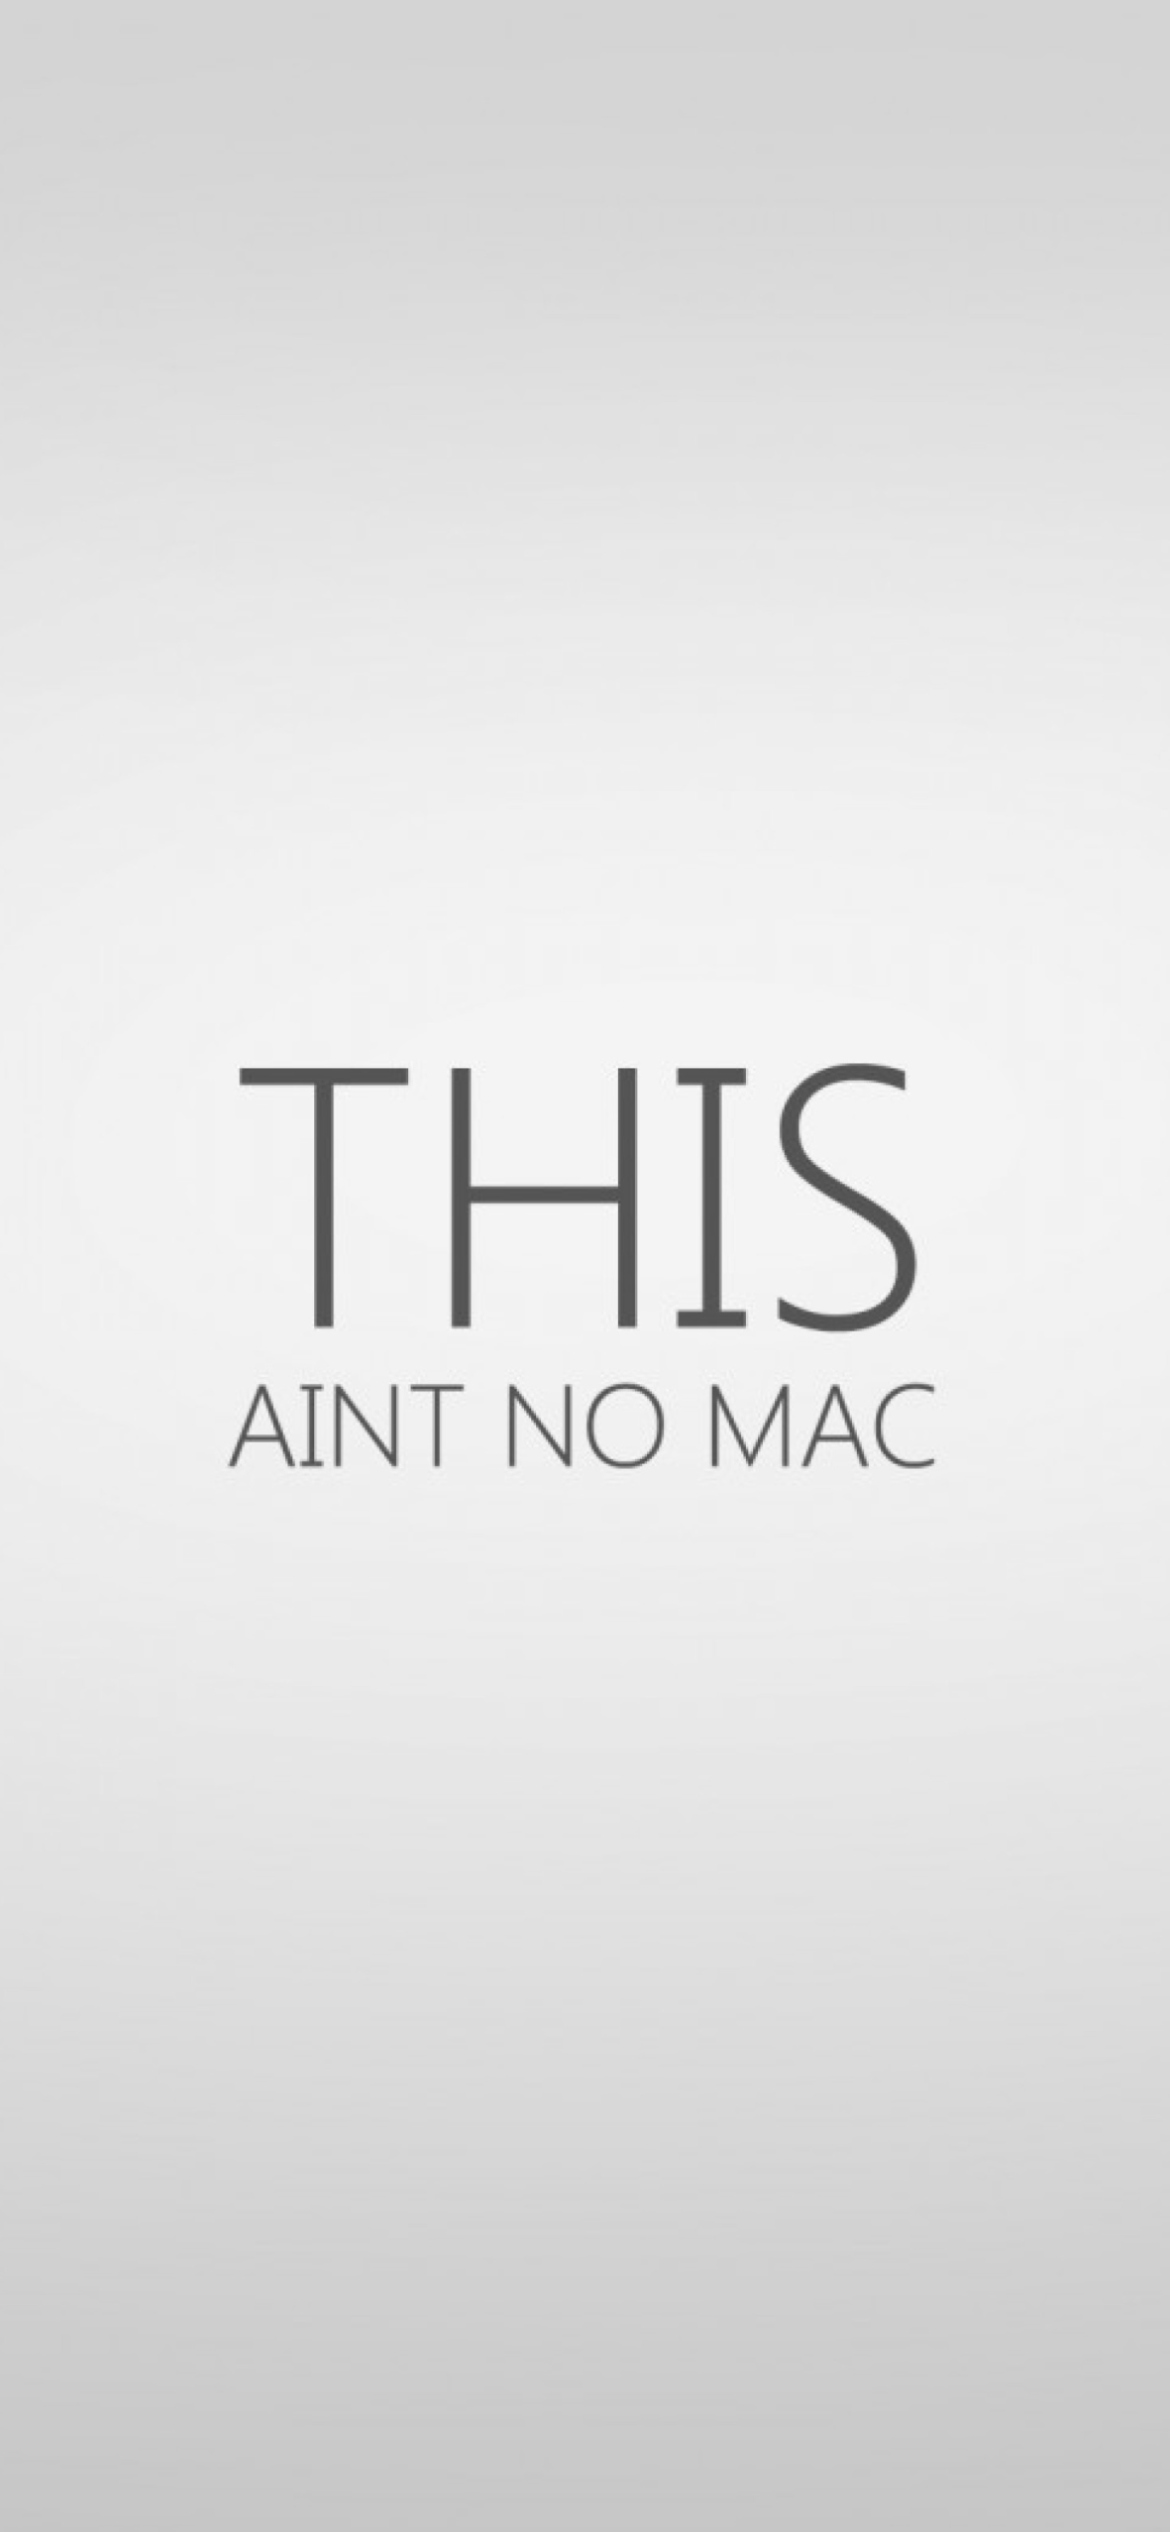 Ain't No Mac wallpaper 1170x2532